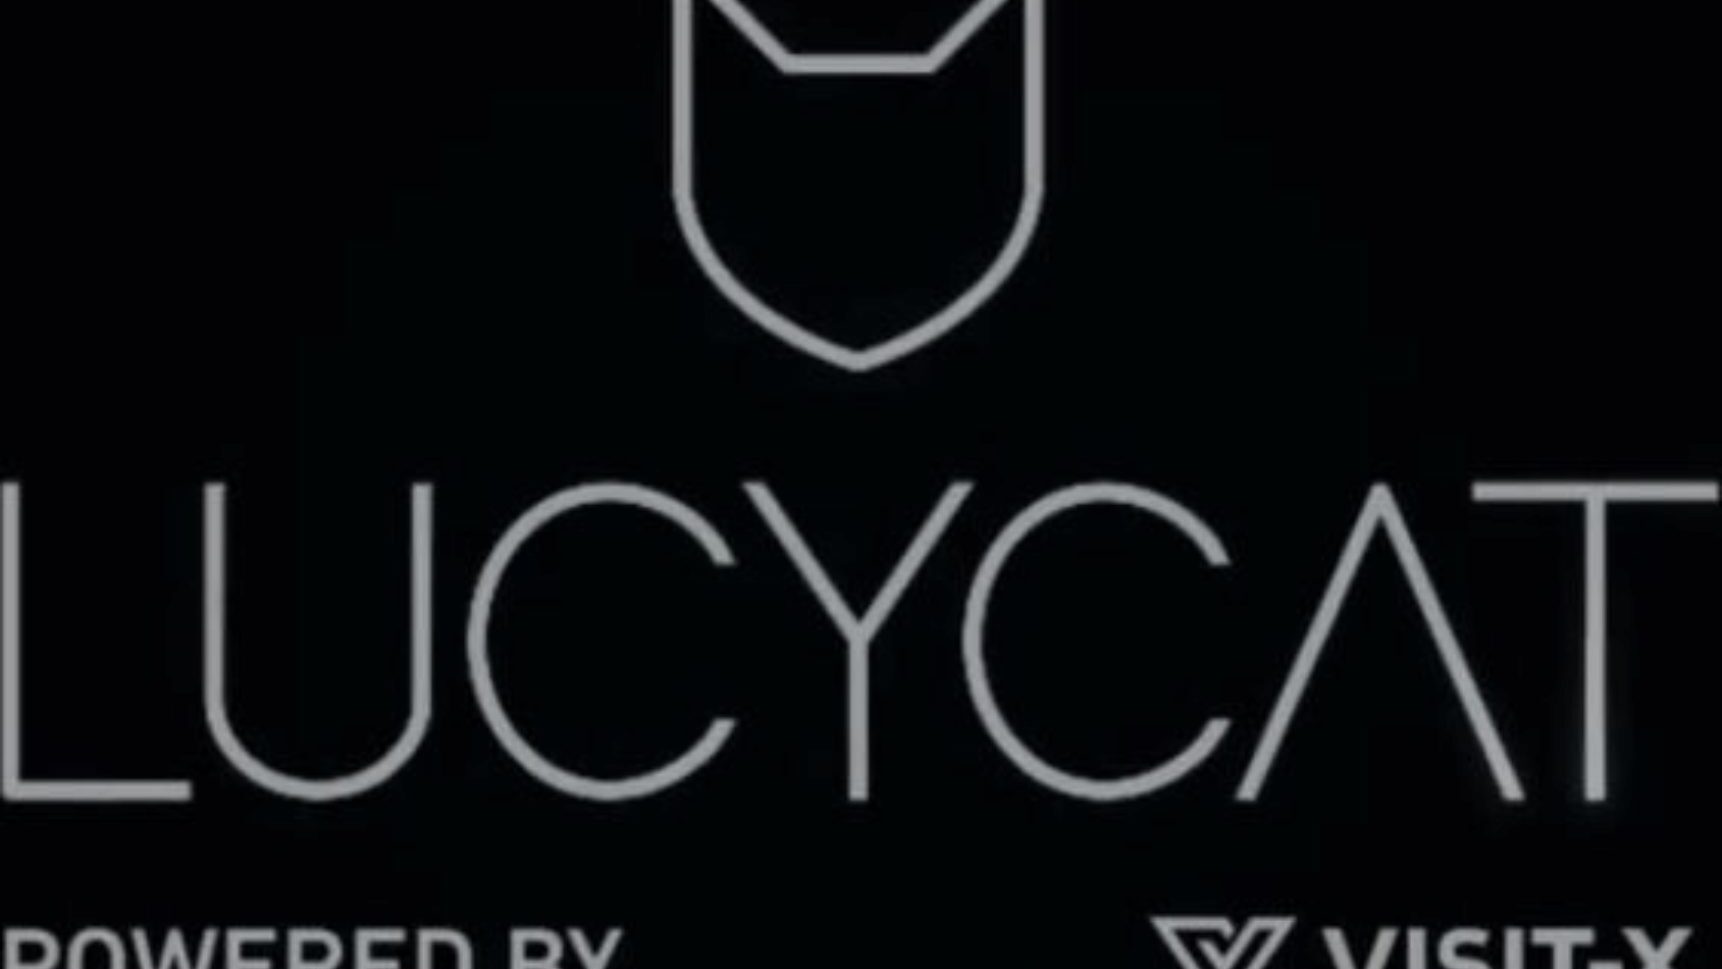 interaktive wichs utfordring - Lucy Cat